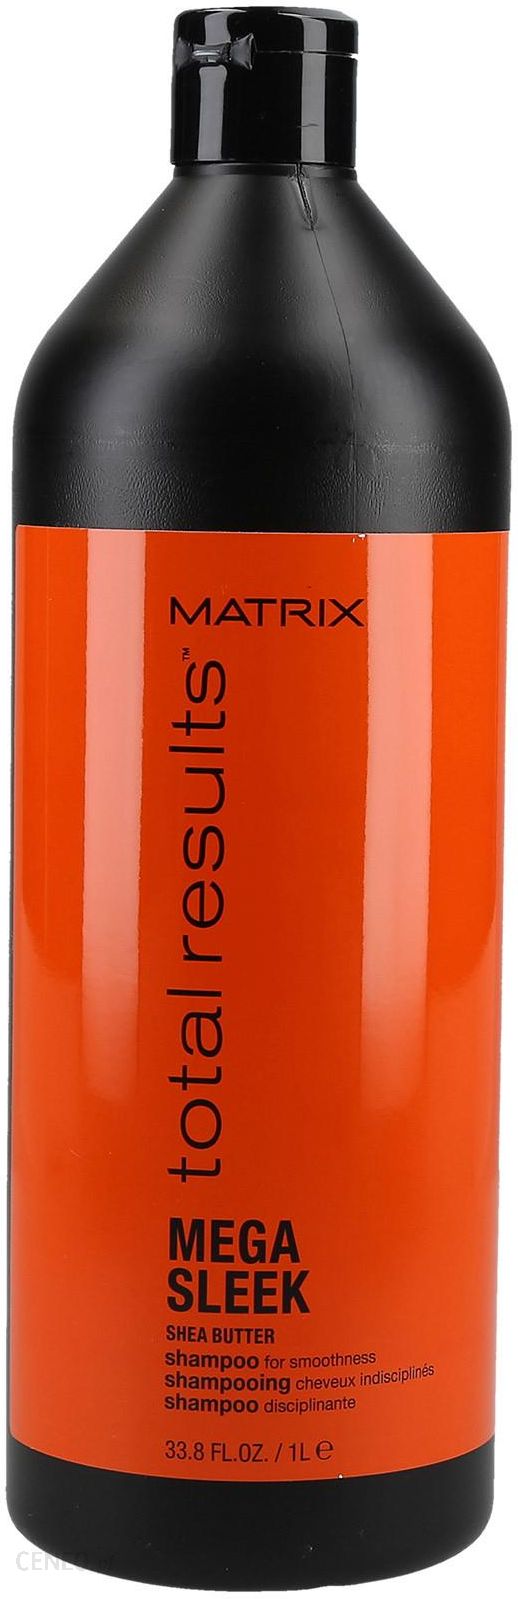 polimerowy szampon ułatwiający stylizację włosów matrix